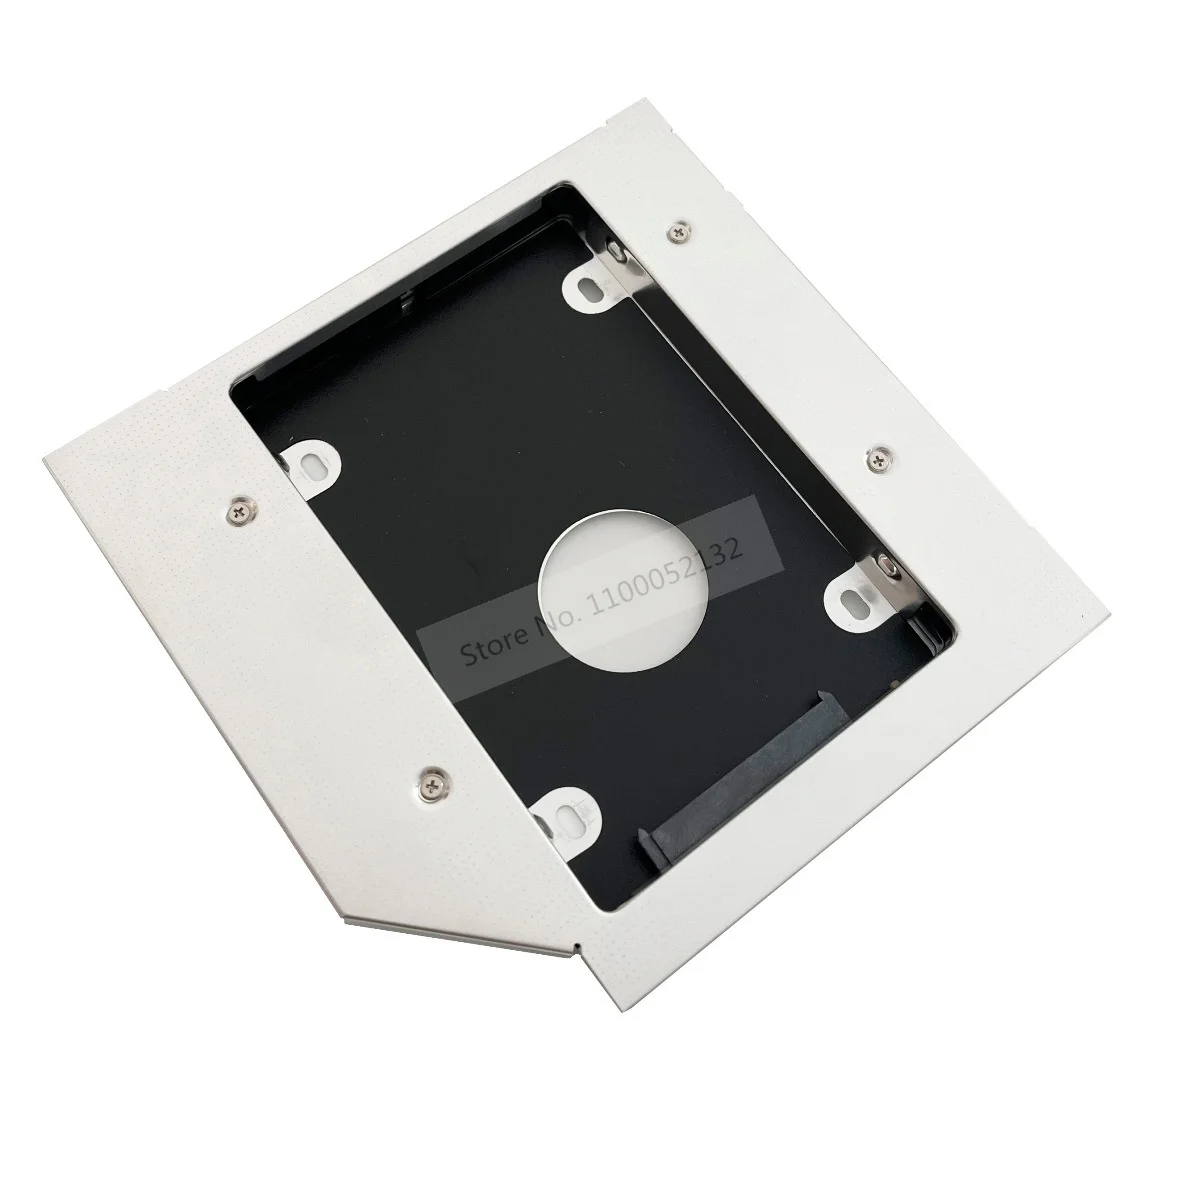 

Aluminum 2nd Hard Drive HDD SSD Case Enclosure Optical Caddy 12.7mm SATA for Samsung RF510 RF511 RC425 RC510 RC520 R580 R480